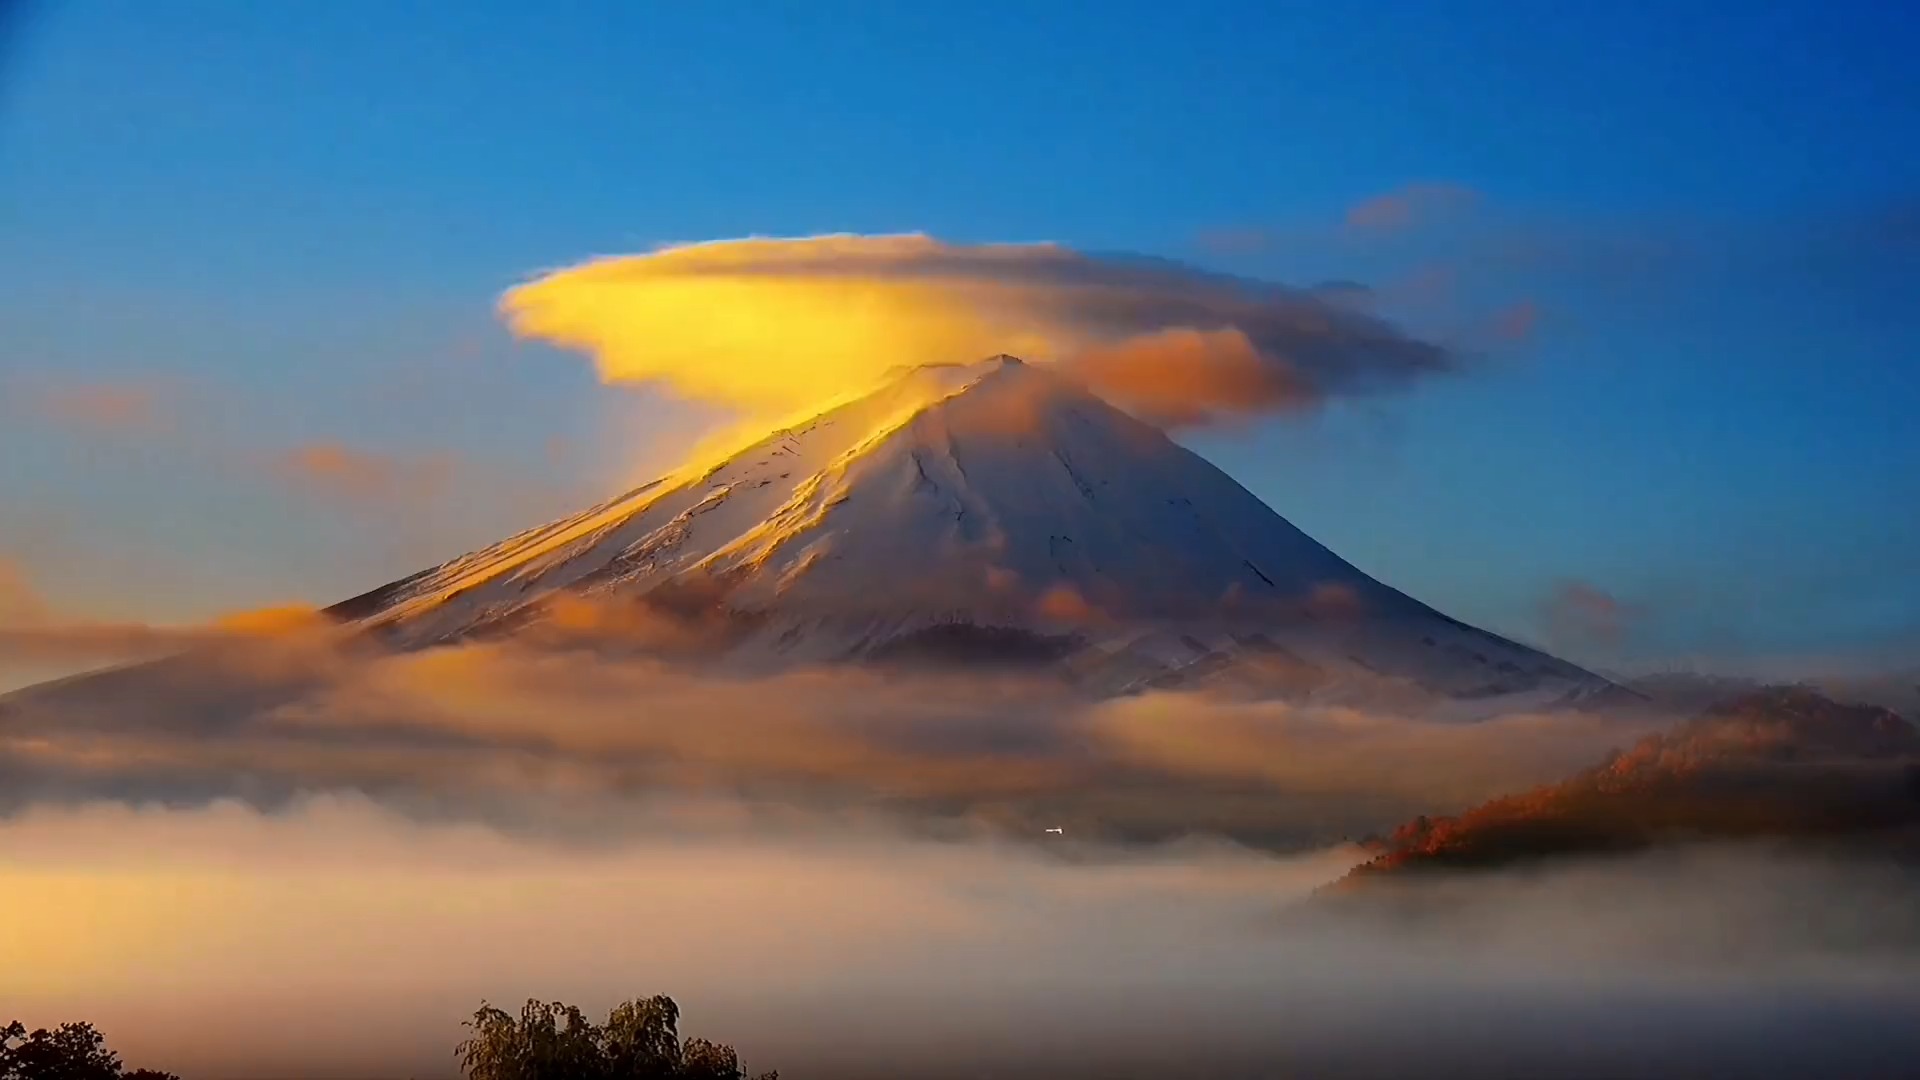 富士山历史共喷发18次,最后一次喷发是1707年,此后休眠至今